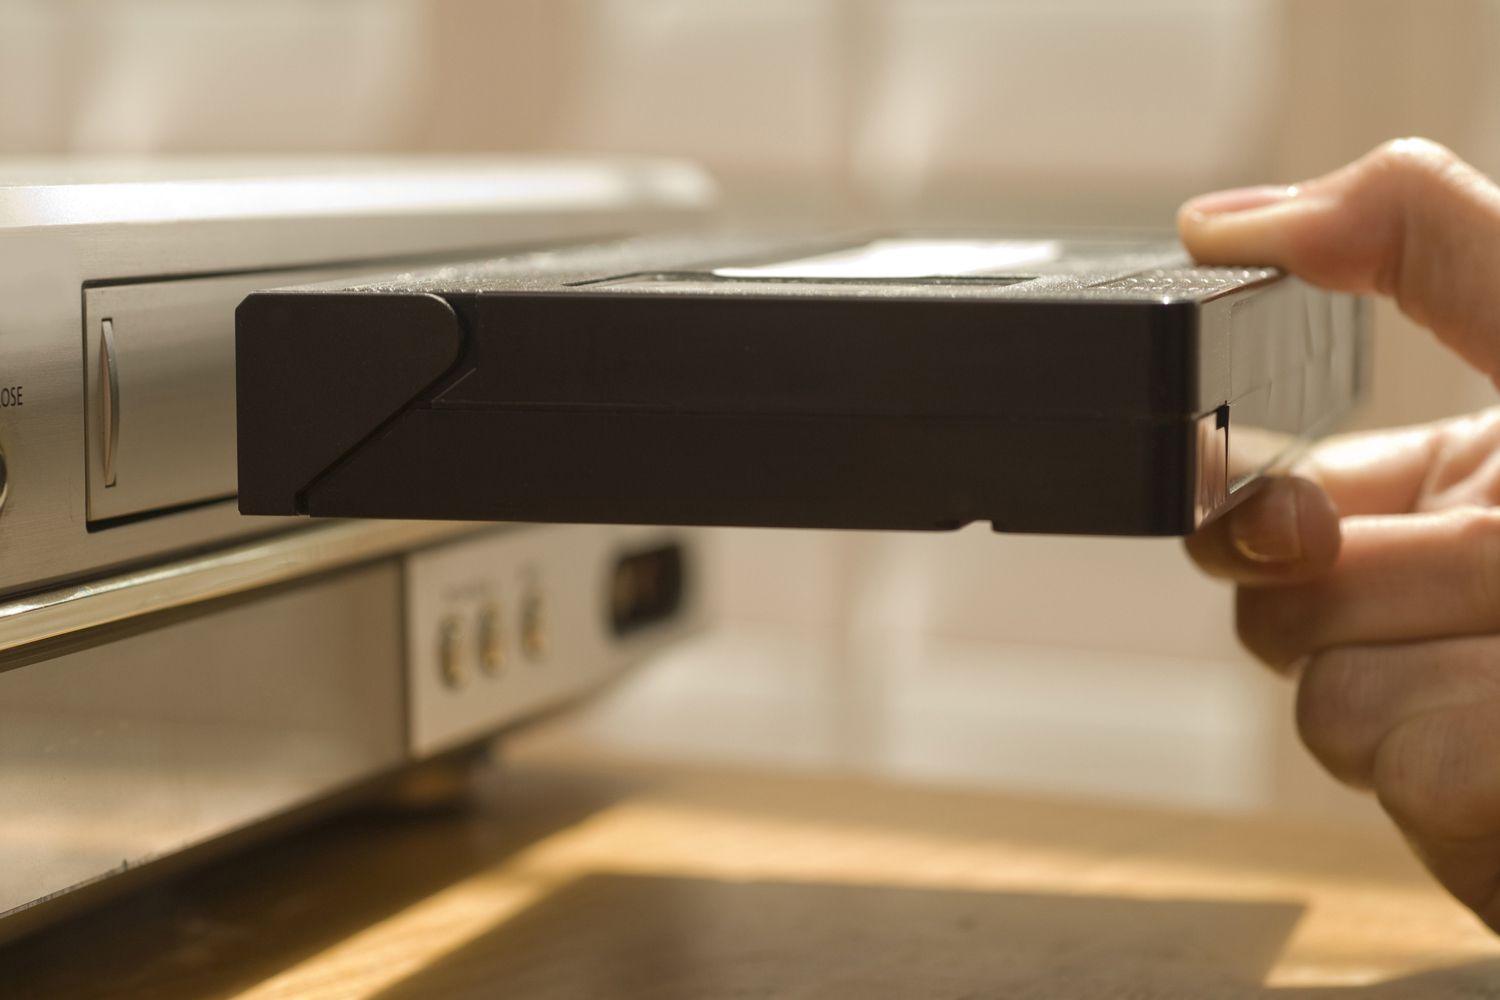 Ladda ett VHS-band i en videobandspelare